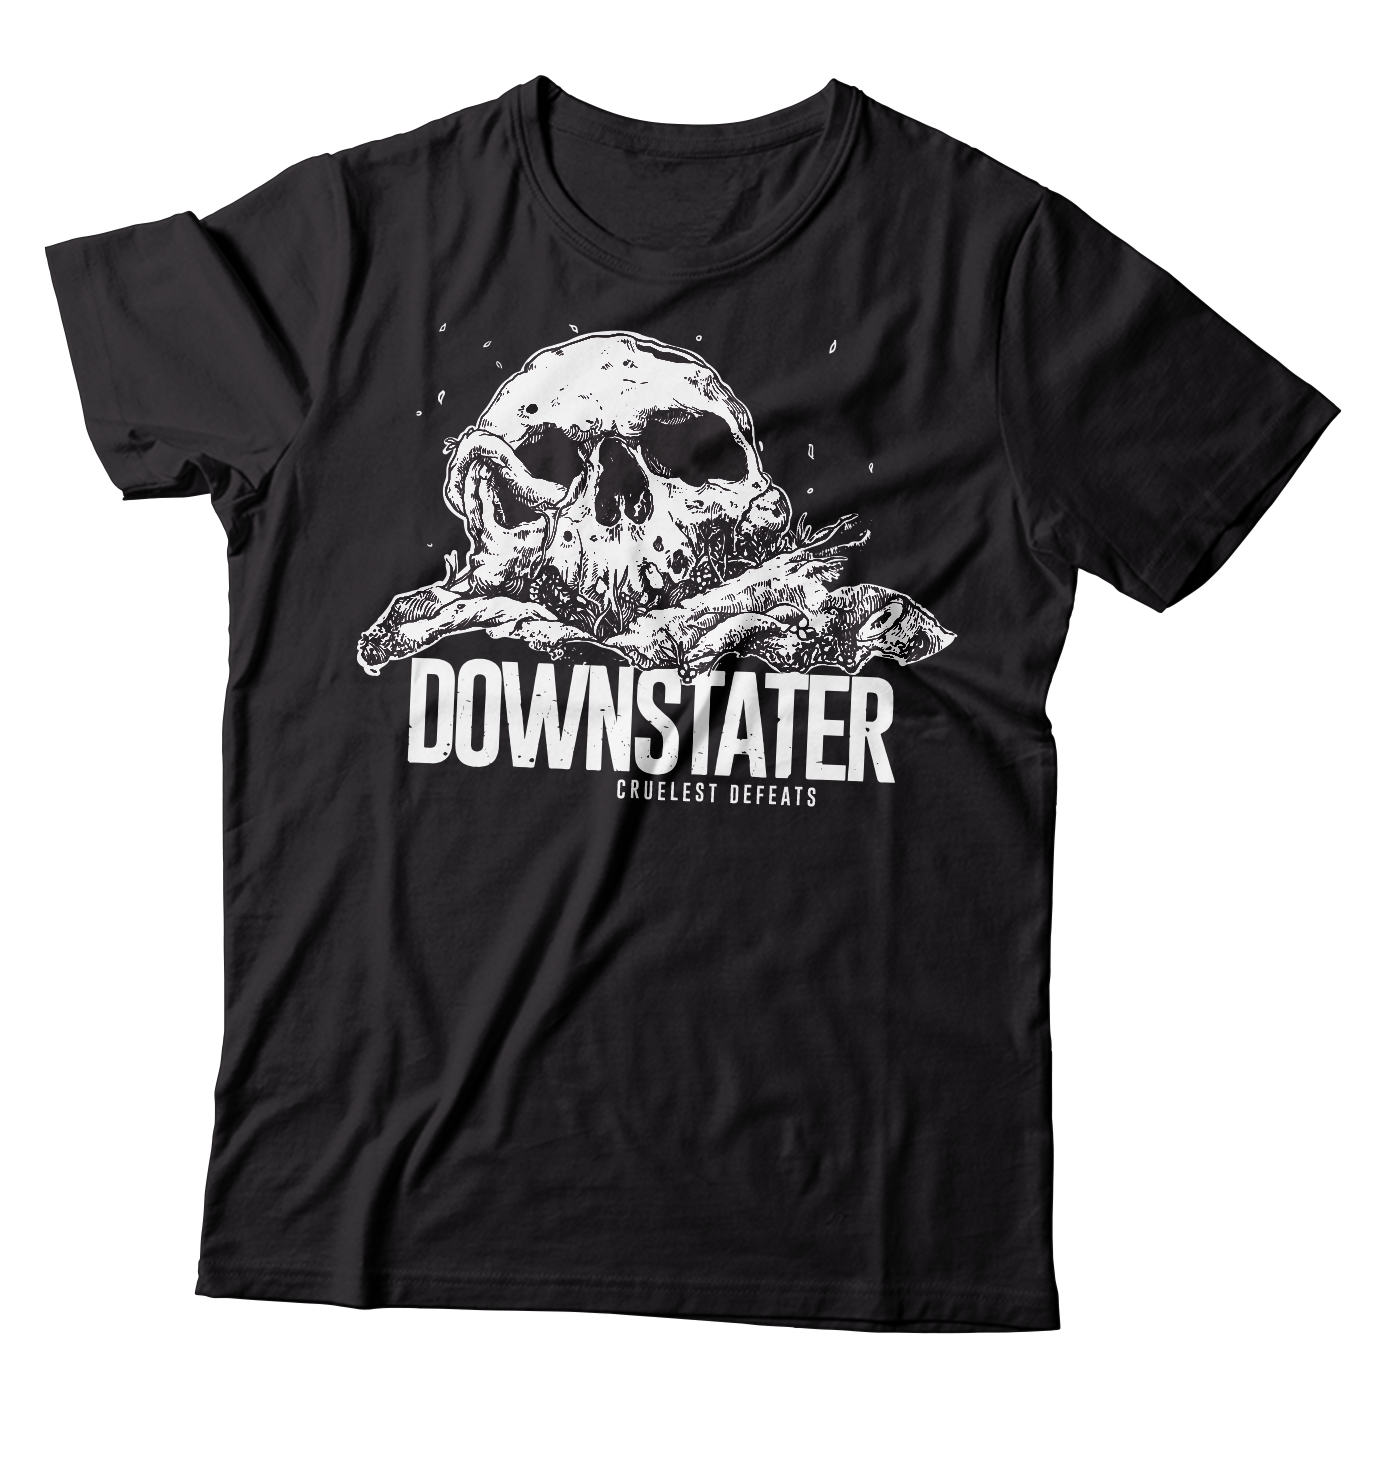 DOWNSTATER - "Cruelest Defeats" (Black) (T-Shirt)